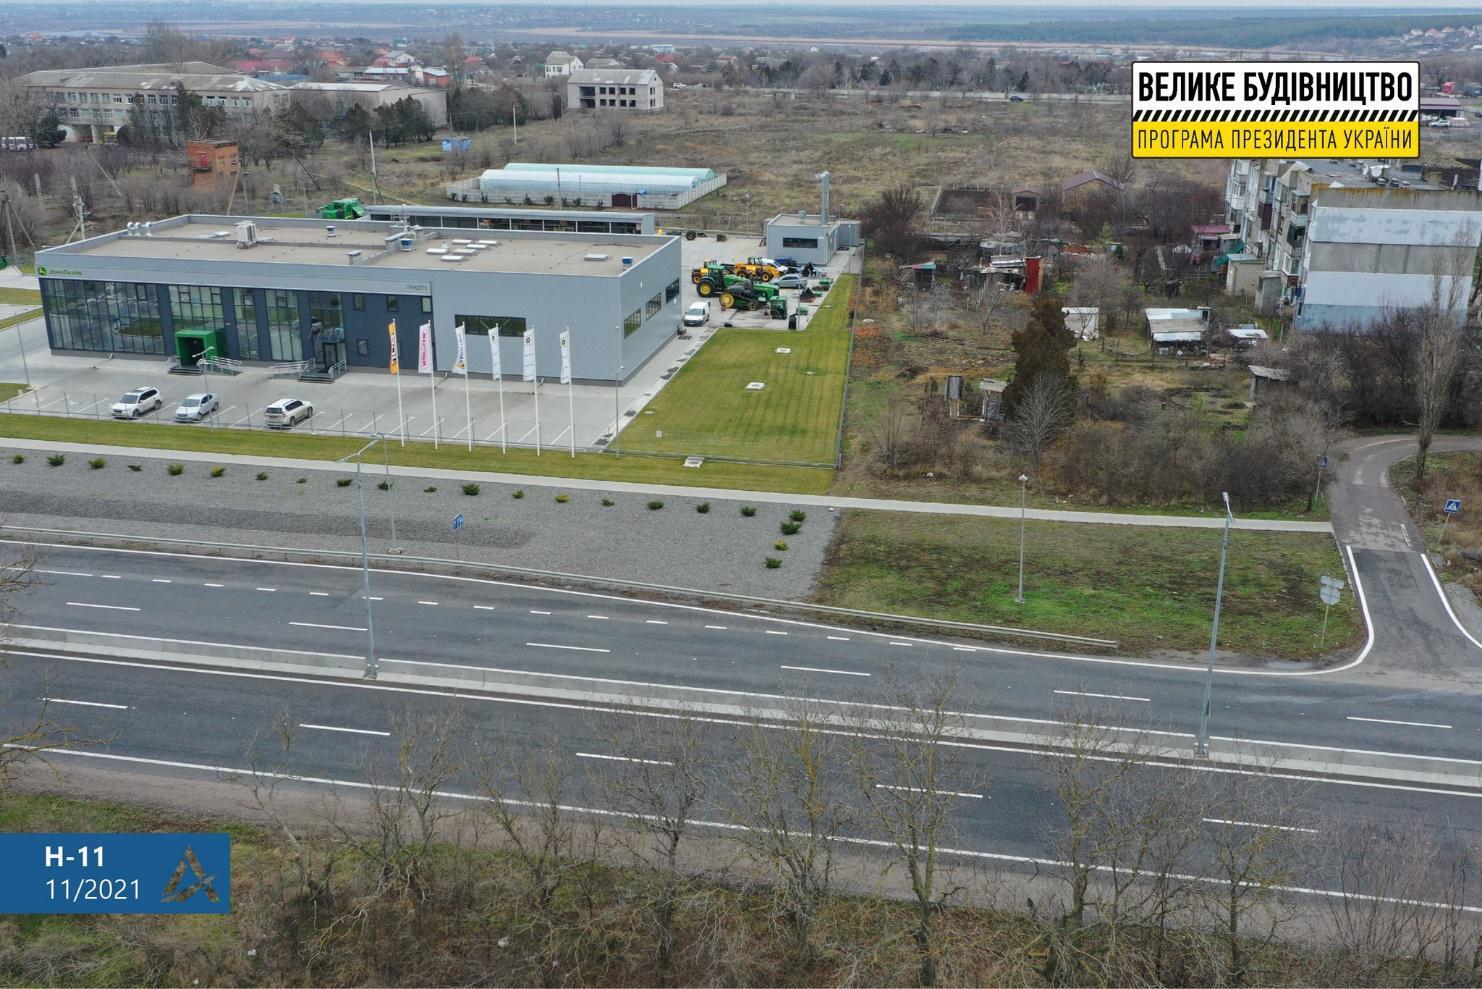 "Большая стройка" Зеленского восстановила самую разрушенную трассу Н-11 на Николаевщине